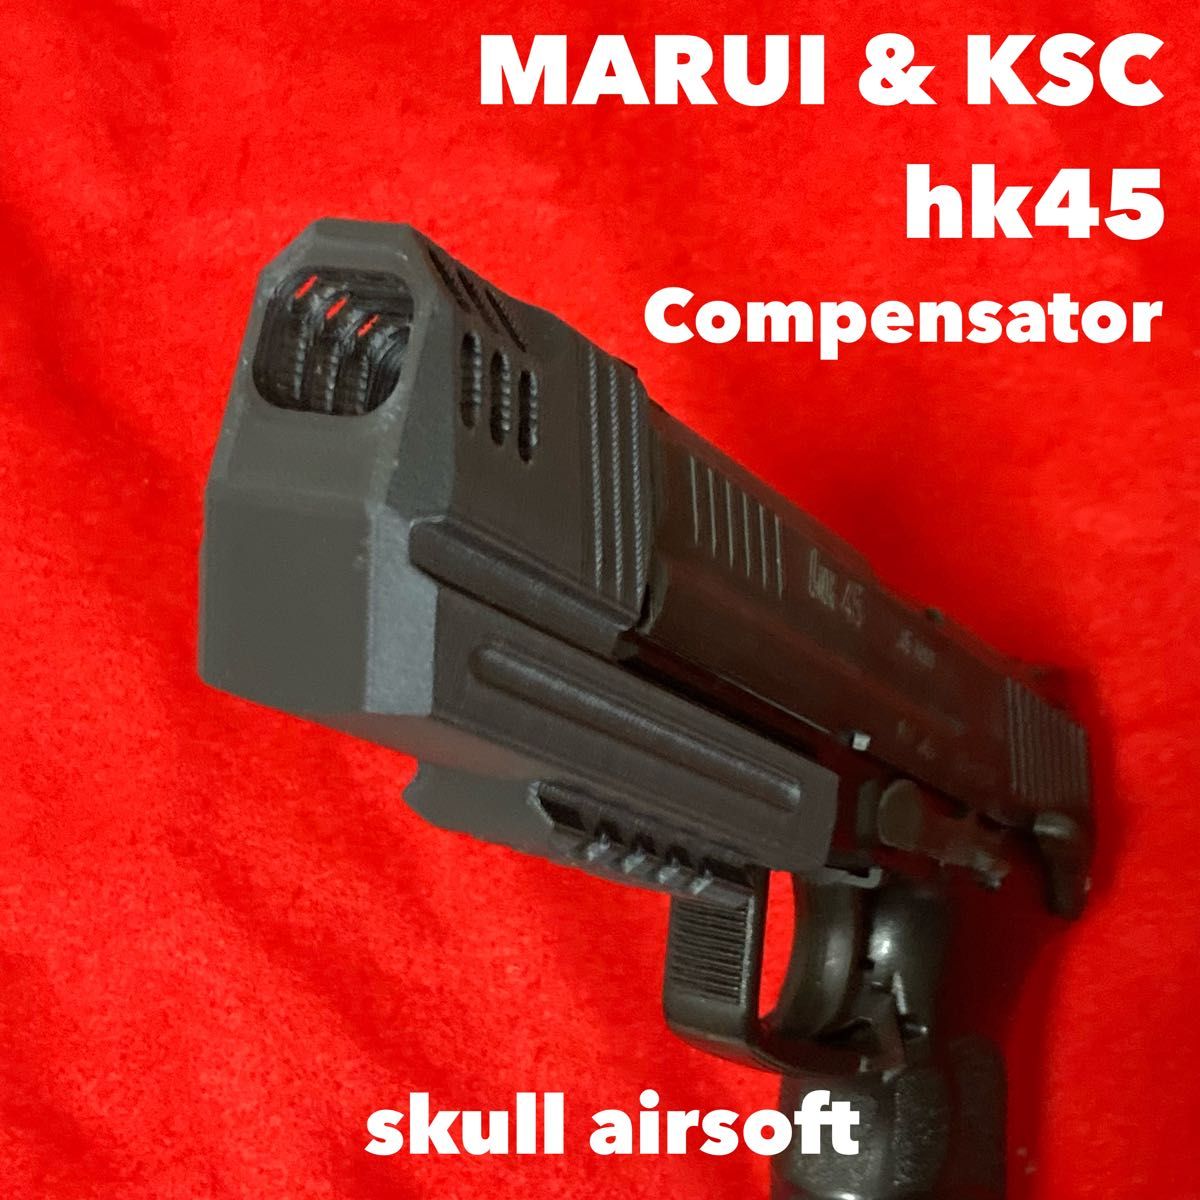 マルイ&KSC hk45用 コンペンセイター